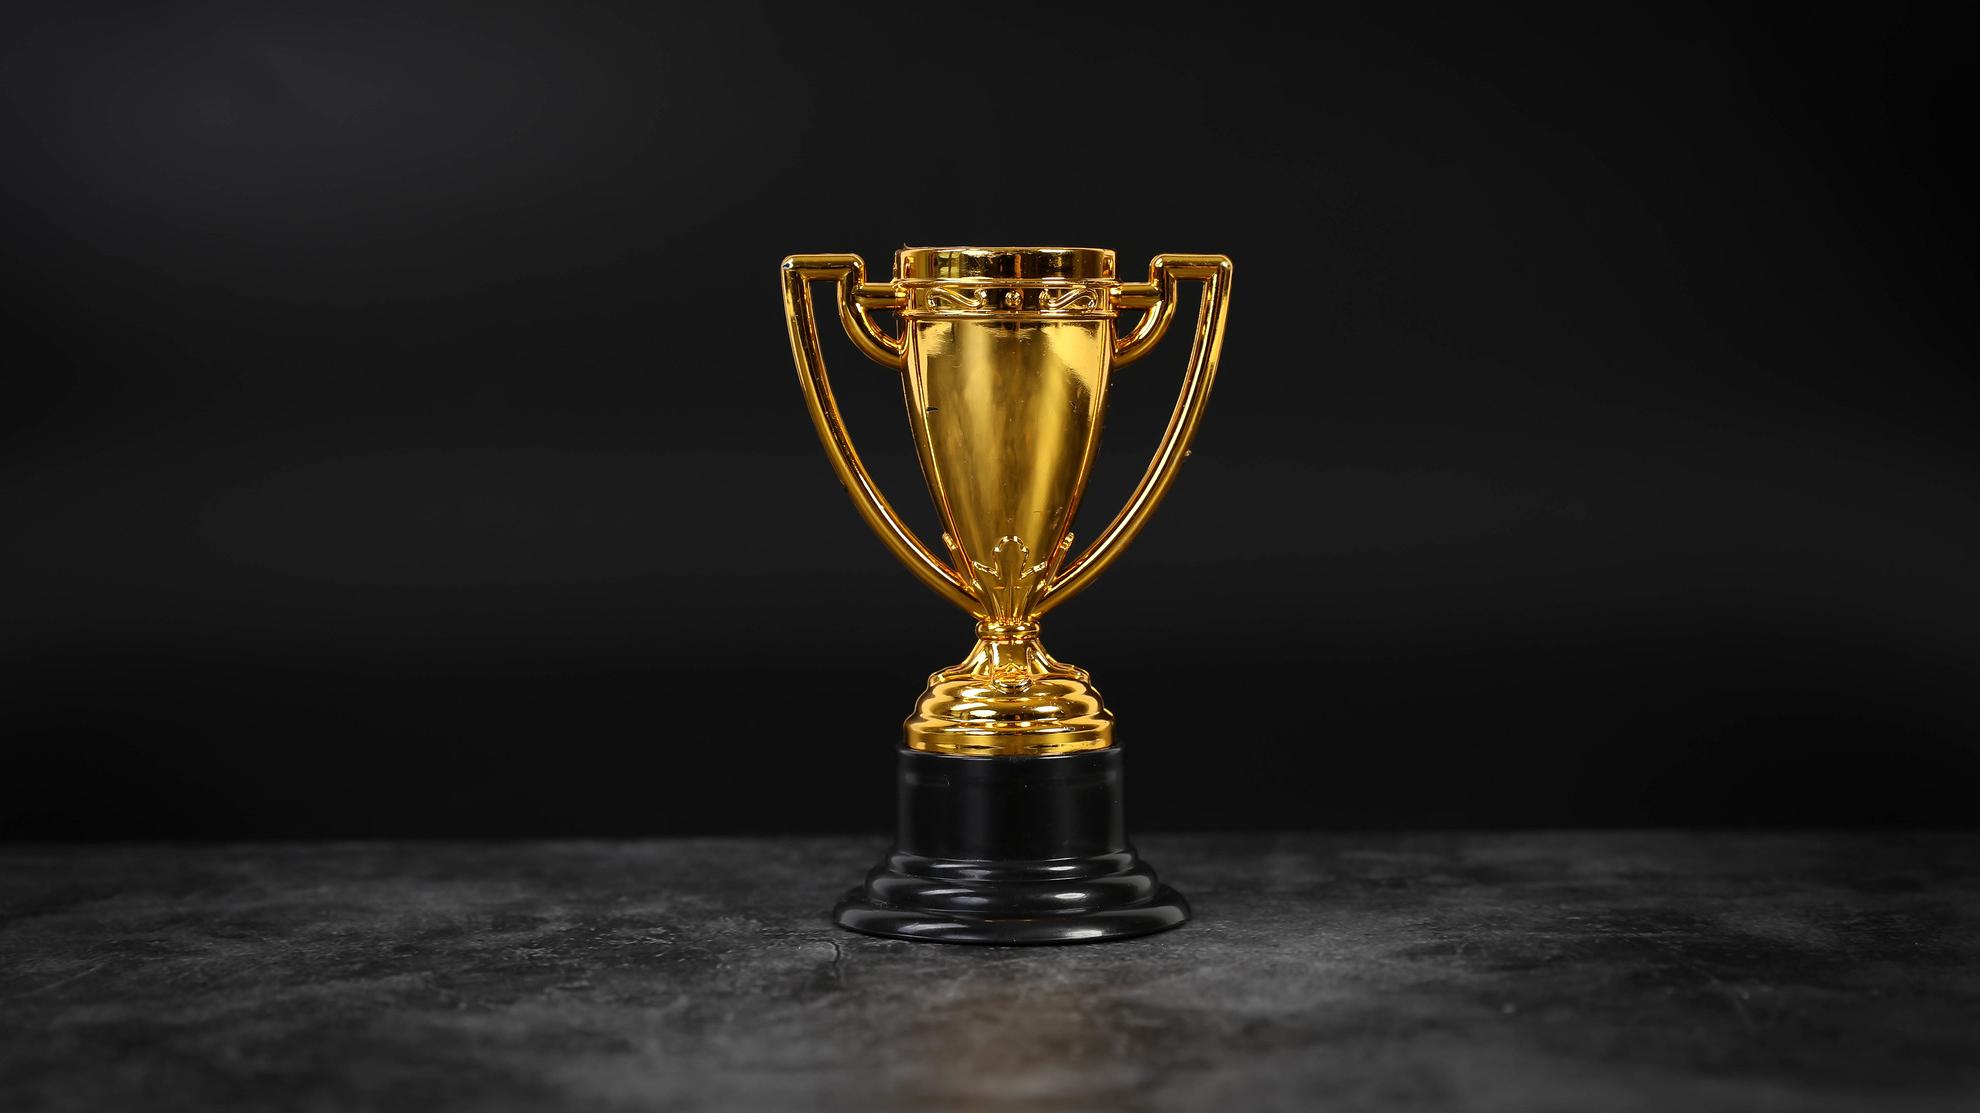 Golden trophy on a black background.